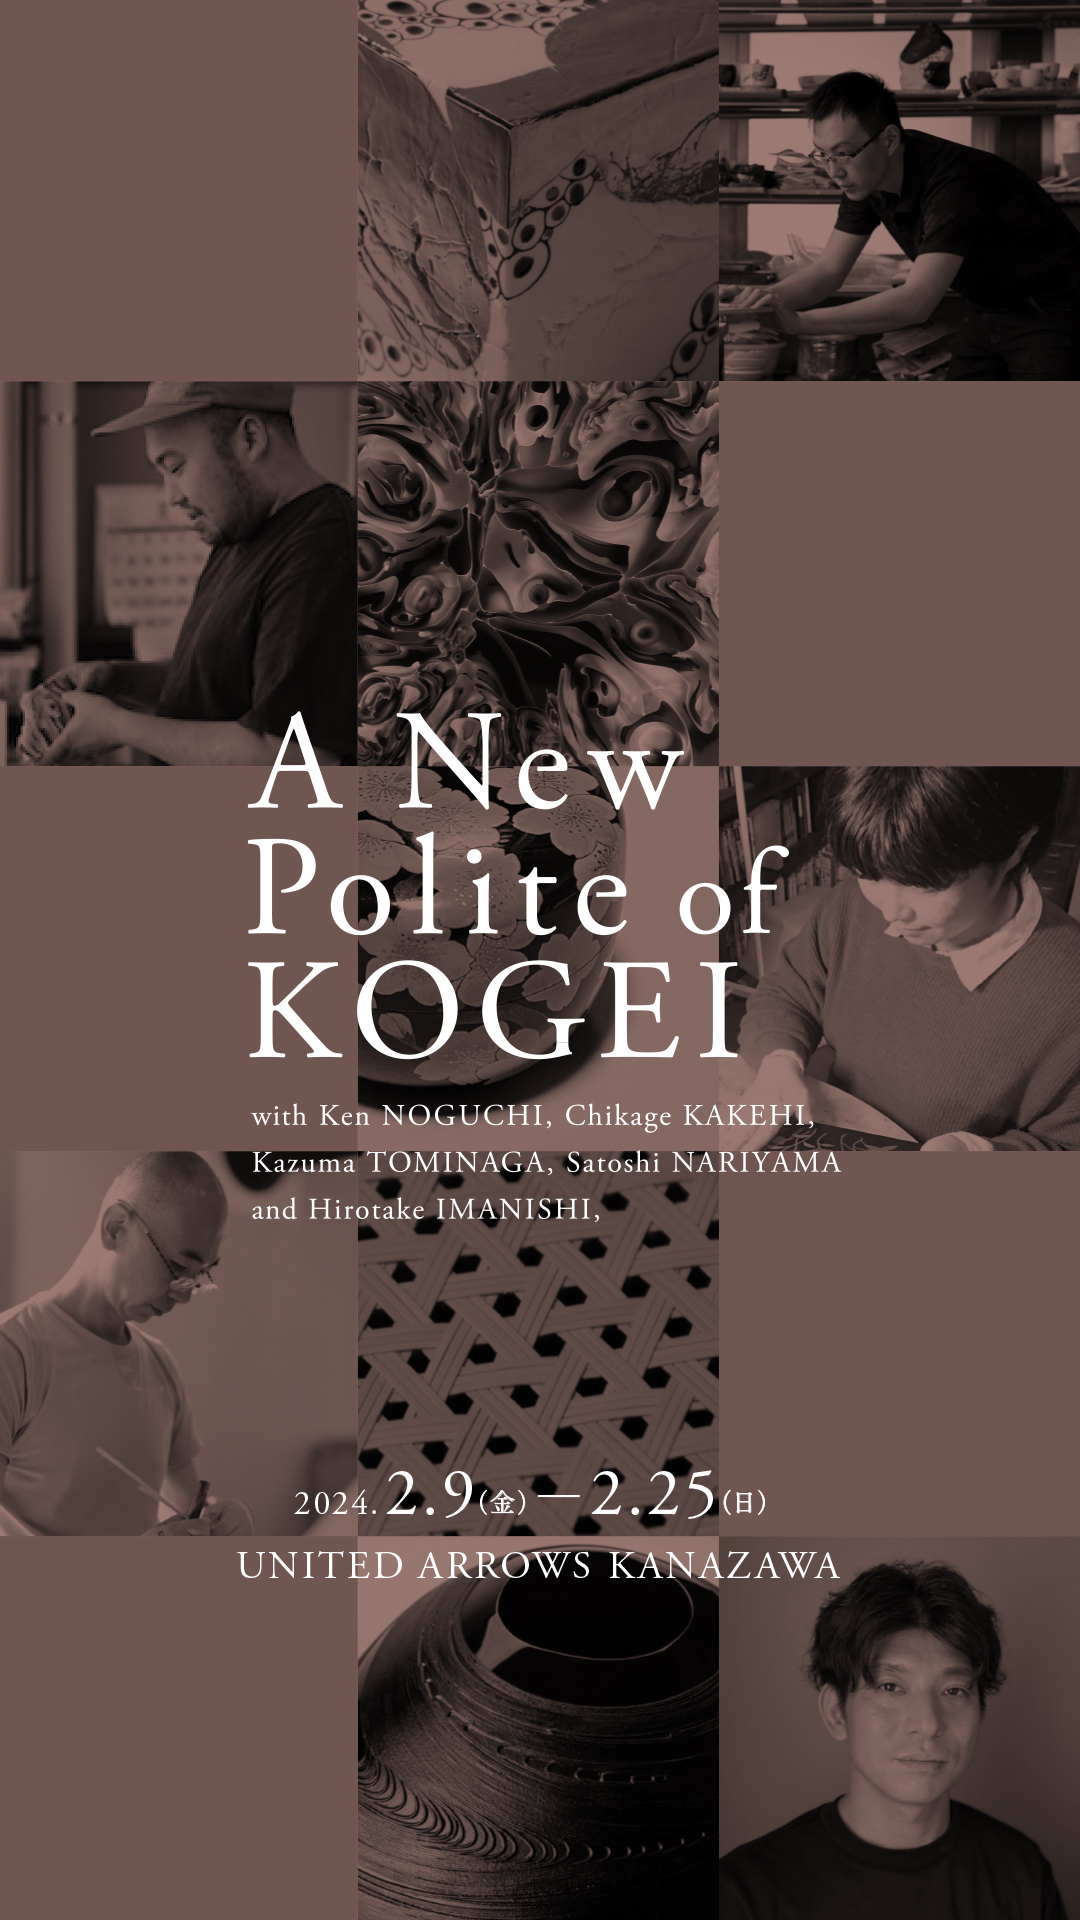 「金沢、つくるプロジェクト02 A New Polite of KOGEI」作品発表展覧会